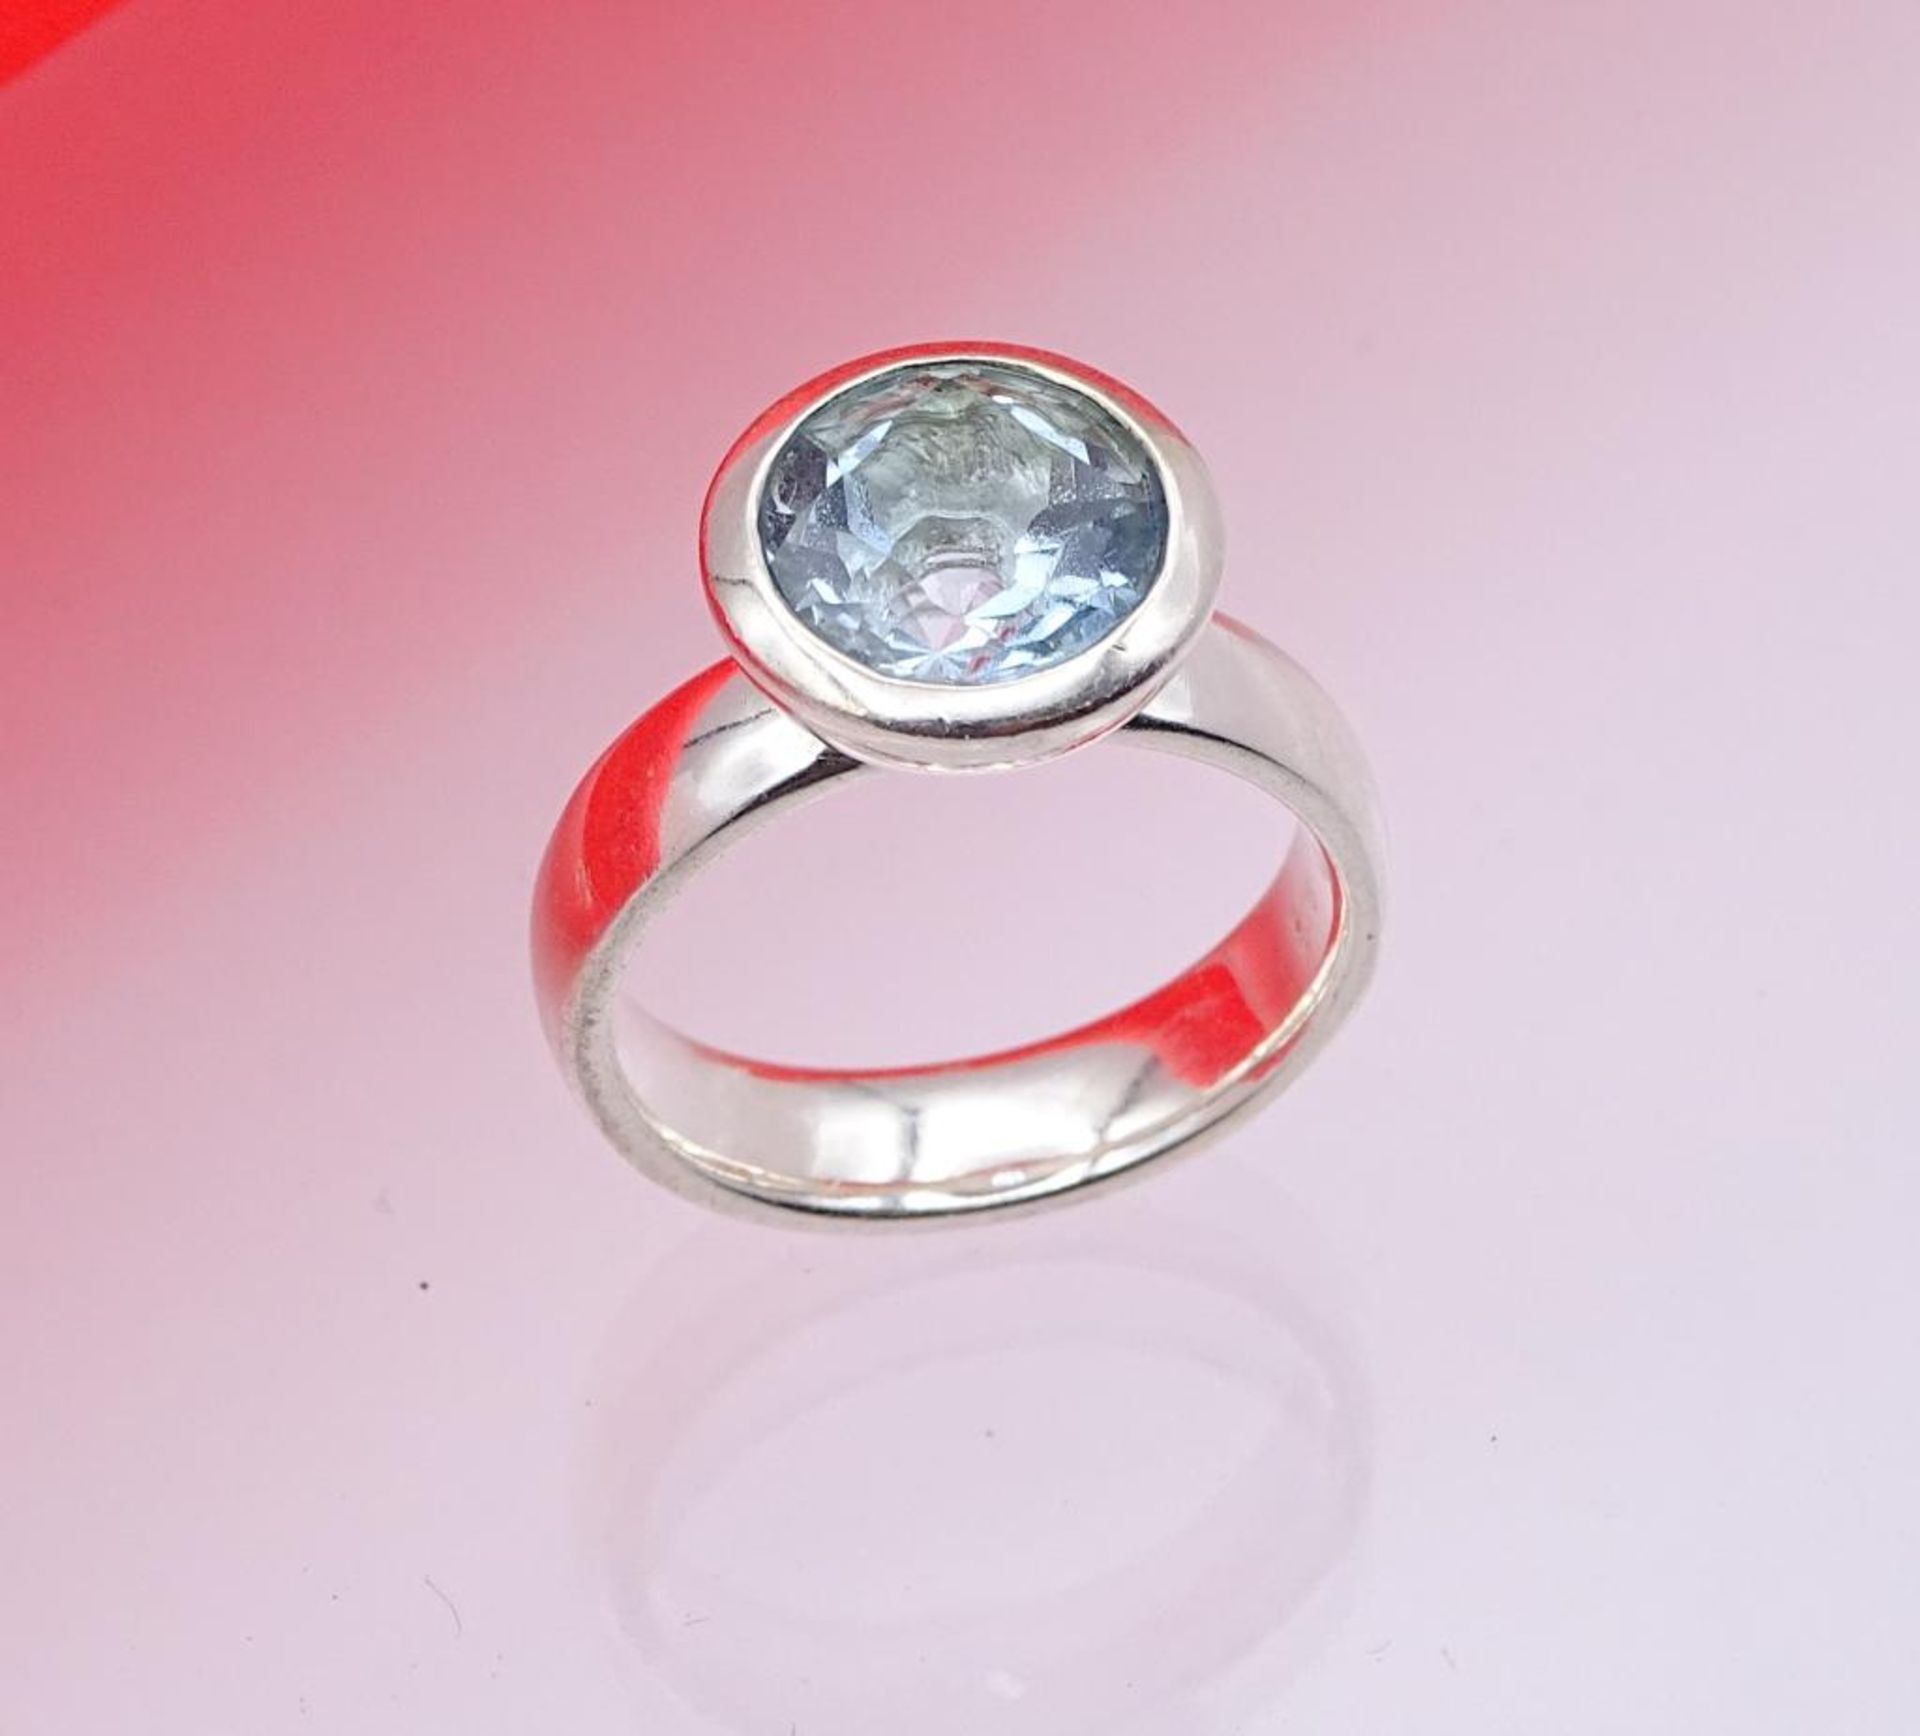 925er Silber Ring mit einen runden facettierten hellblauen Stein,wohl Aquamarin, 7,4gr.,RG 54 - Bild 3 aus 3